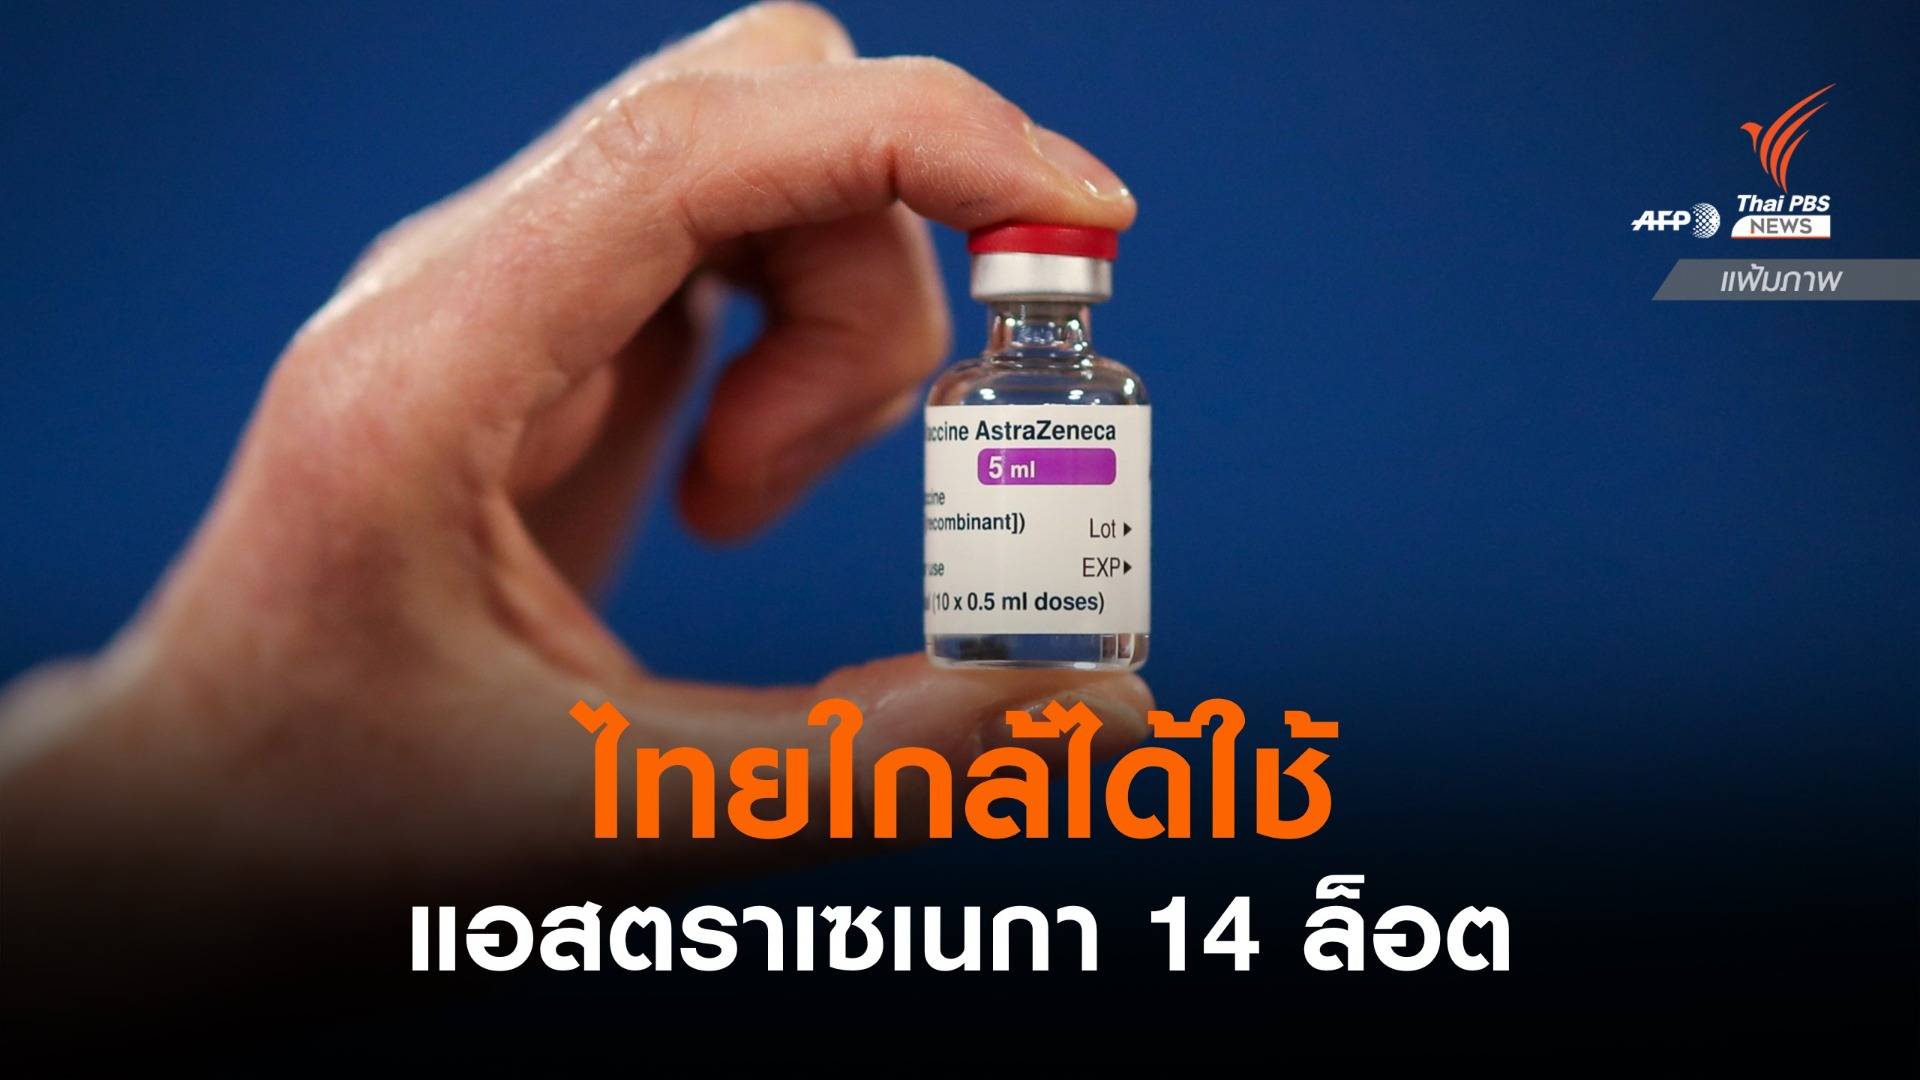 ผลตรวจวัคซีนแอสตราฯ ผลิตในไทย ผ่านมาตรฐานแล้ว 14 ล็อต